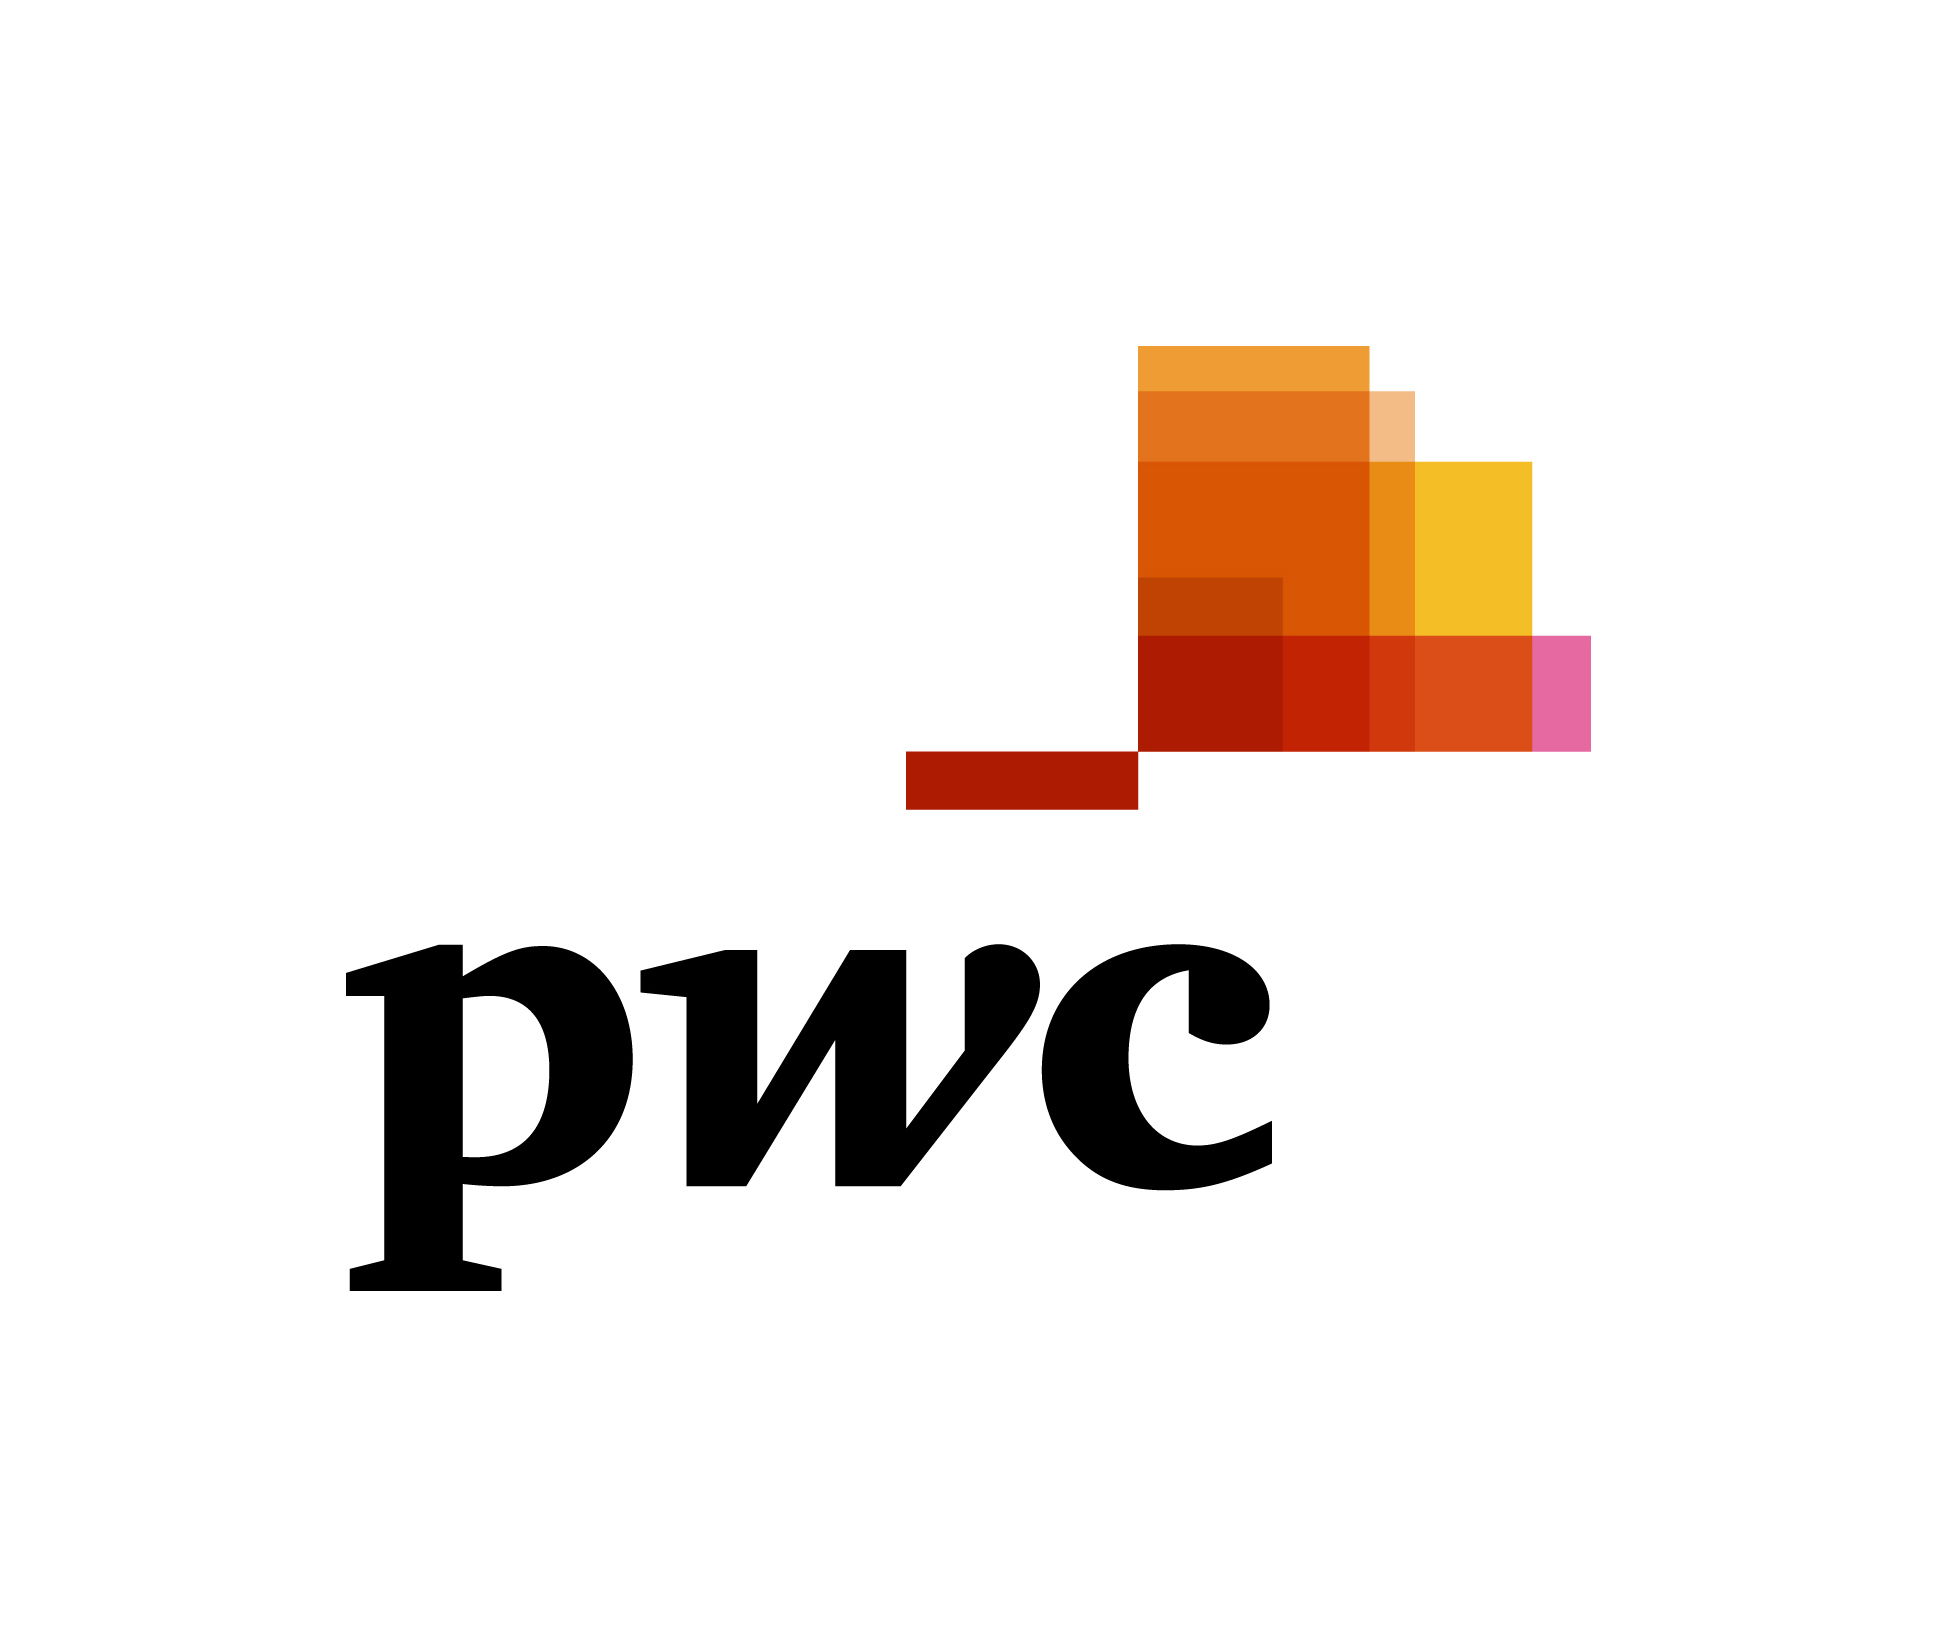 PwC's logo